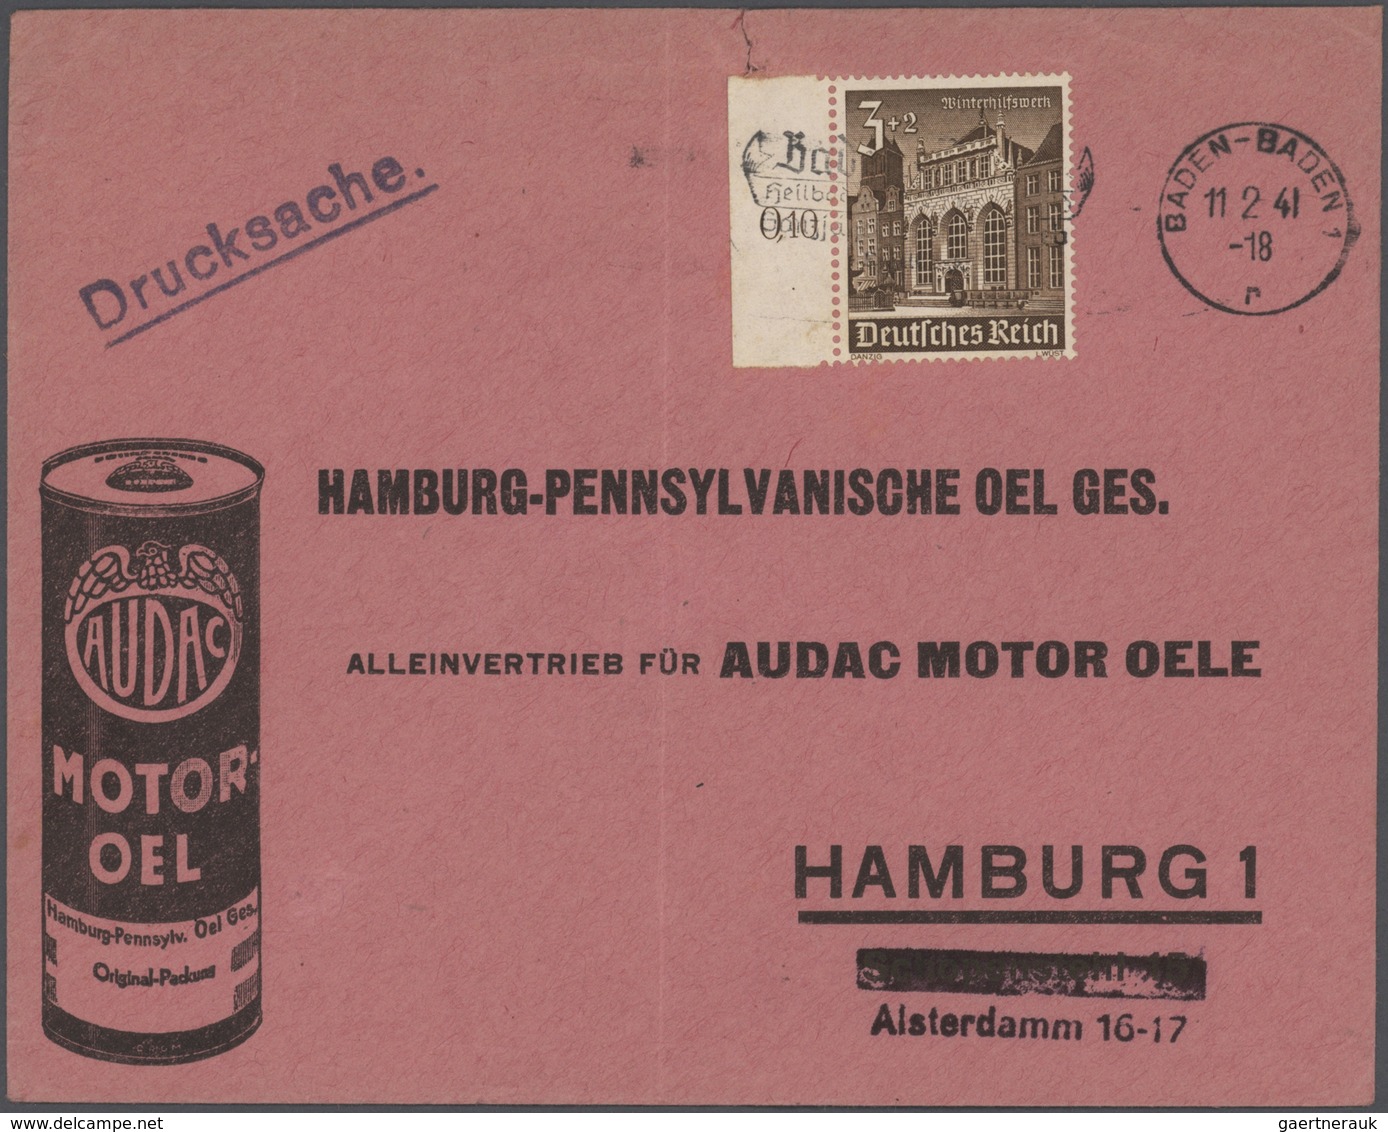 Deutsches Reich: 1875-1944, großer Karton mit vielen hundert Briefen, Belegen und Ganzsachen, dabei